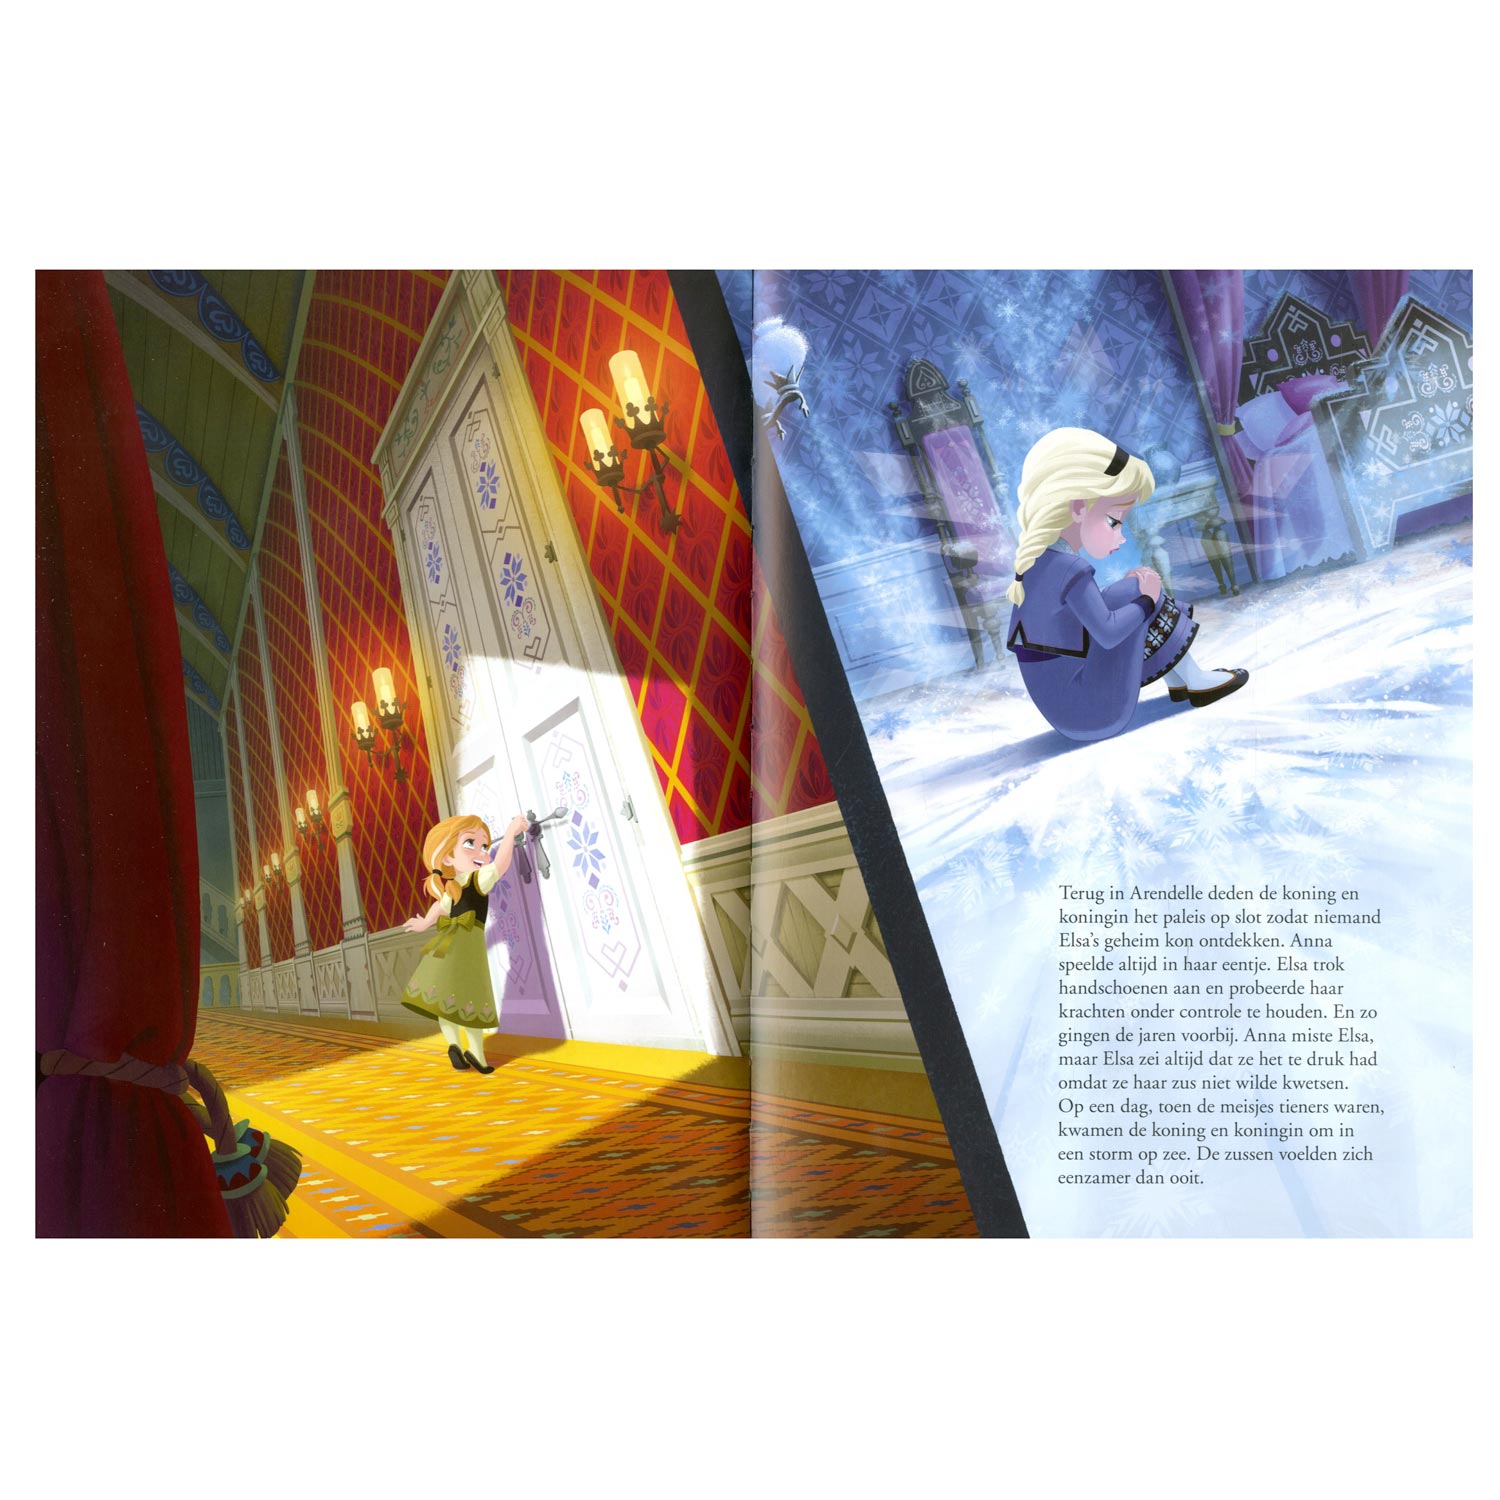 Disney Frozen Groot Verhalenboek.